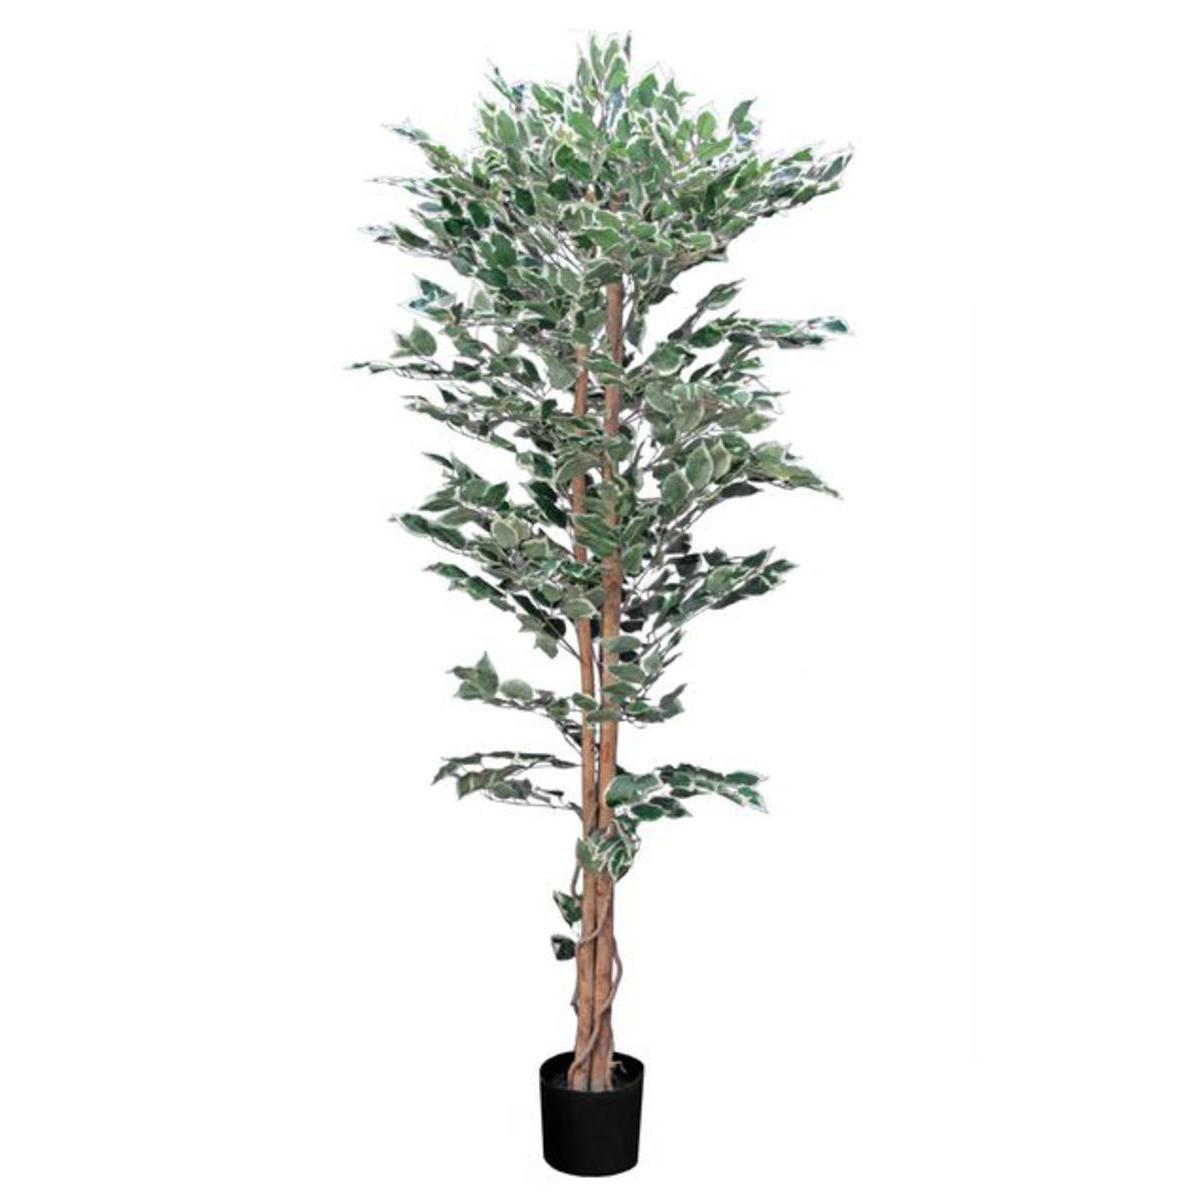 Ficus - Plastique, Polyester, Bois - H 180 cm - Vert